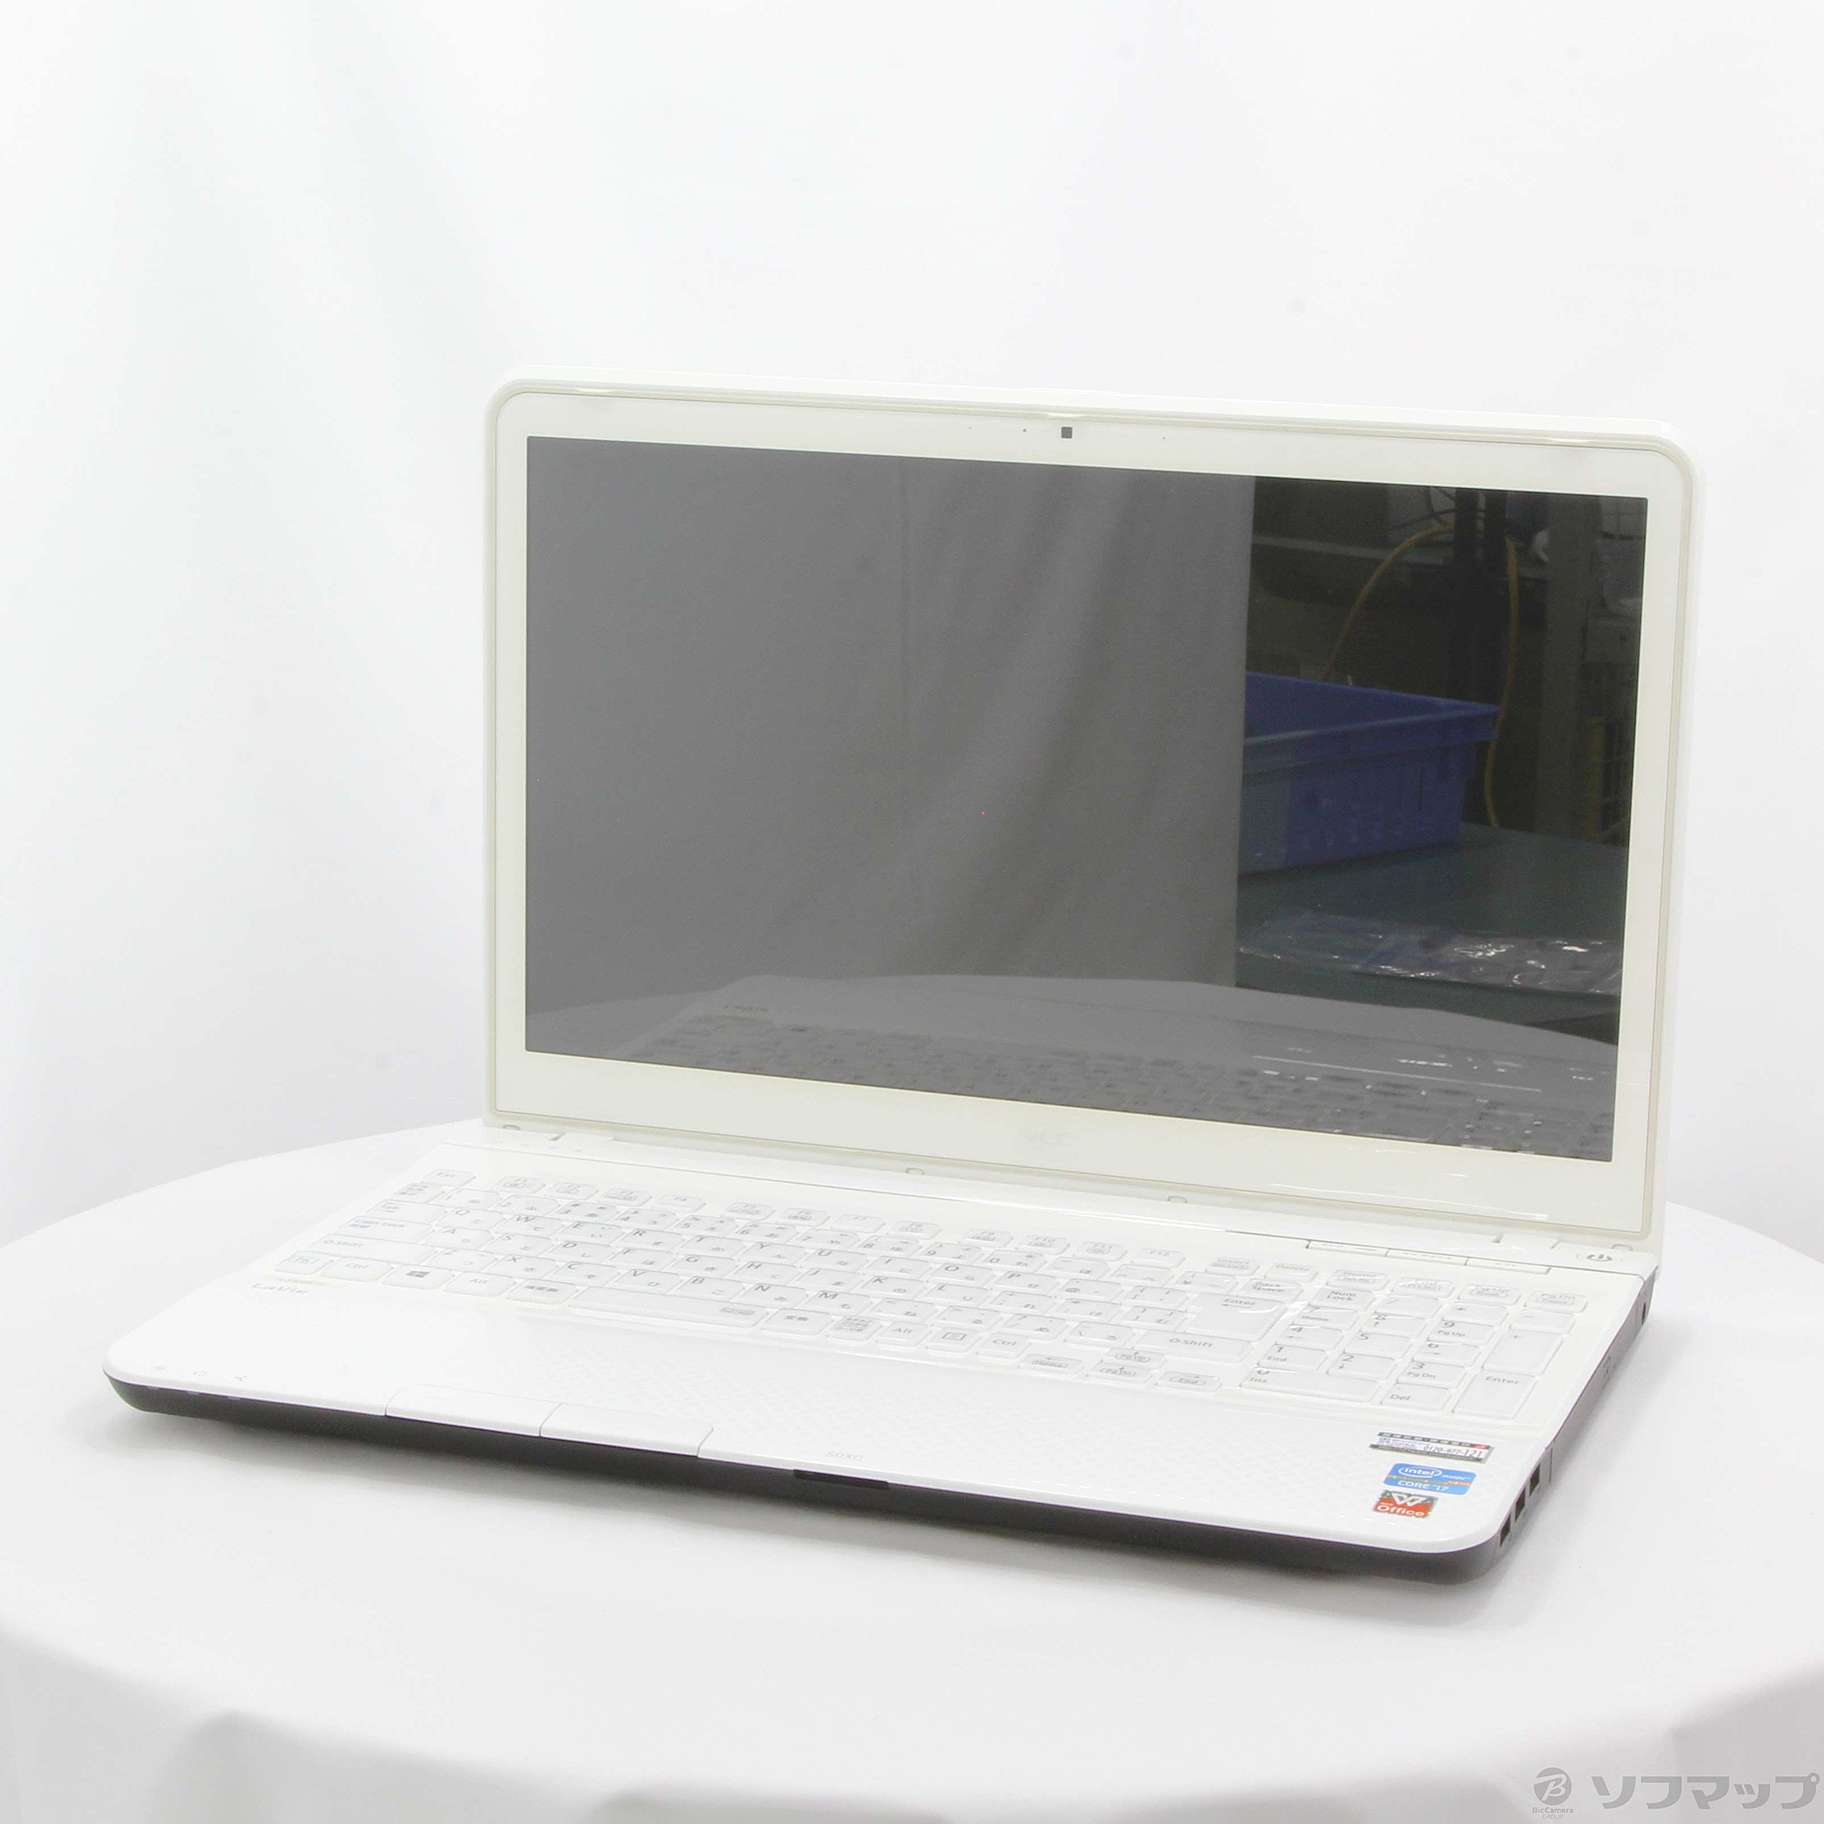 格安安心パソコン LaVie S PC-LS550J23EW クロスホワイト ※バッテリー完全消耗